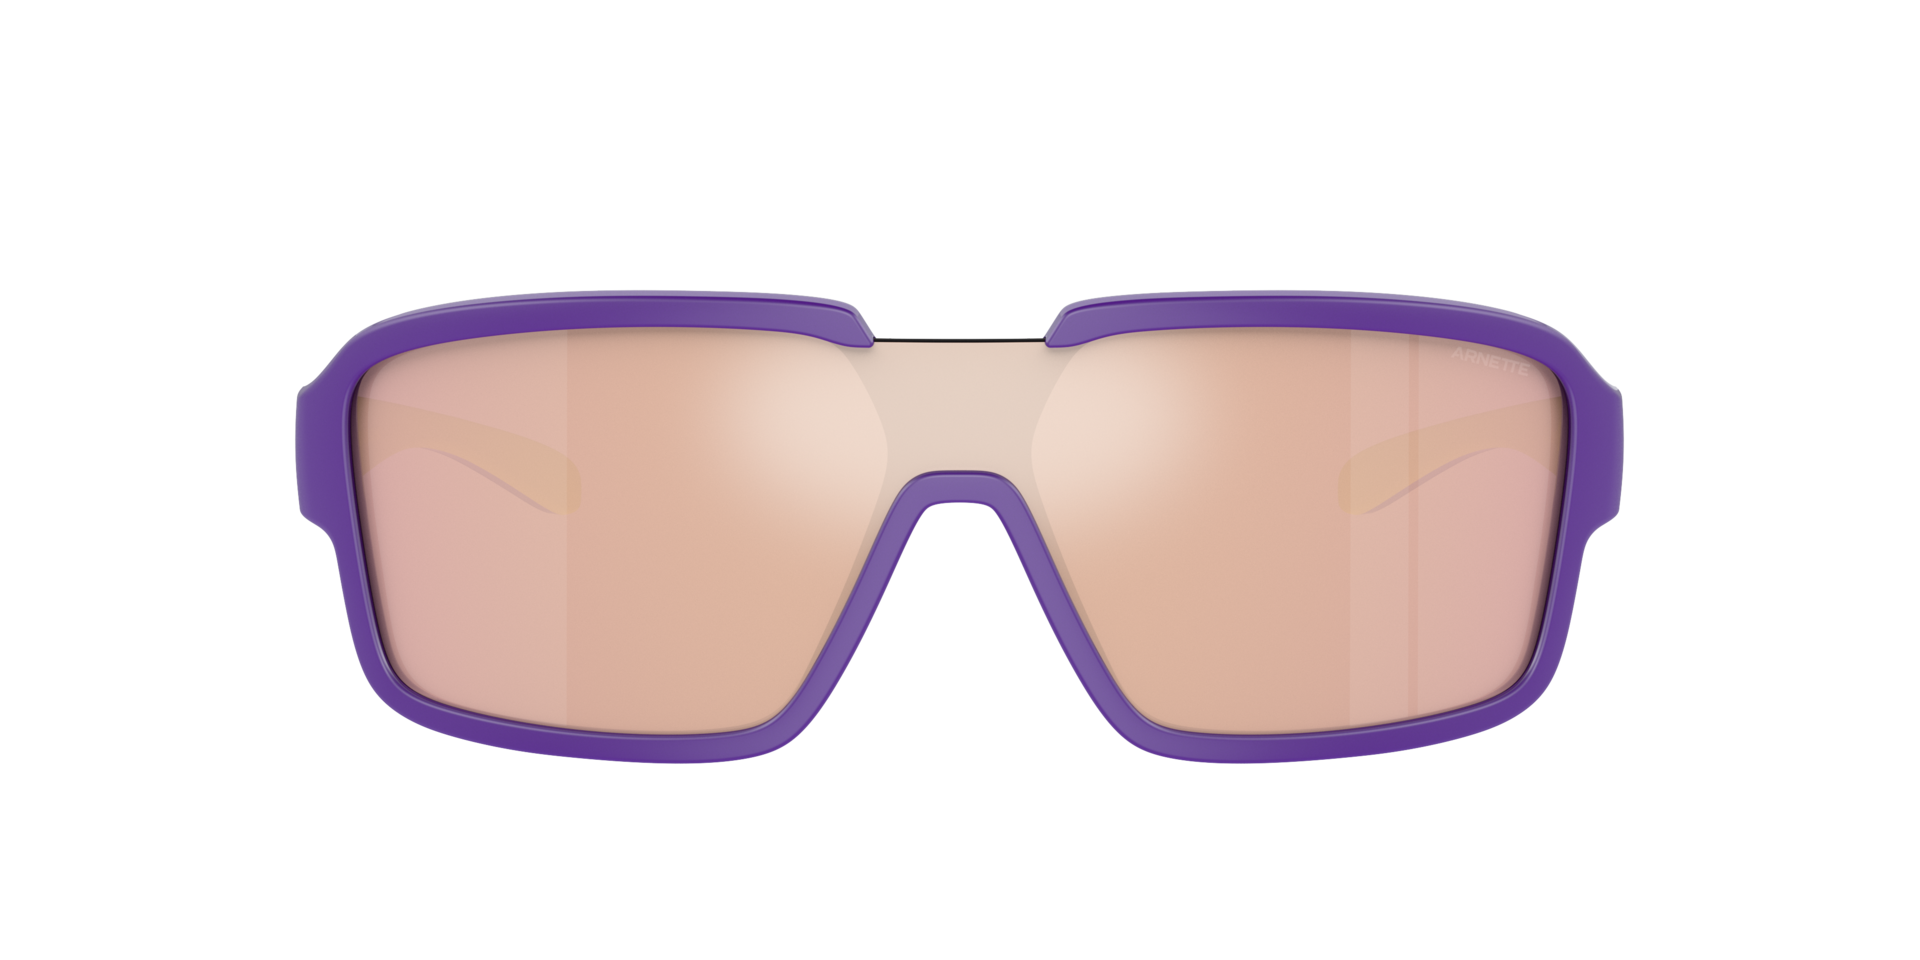 Das Bild zeigt die Sonnenbrille AN4335 29377J von der Marke Arnette in lila.